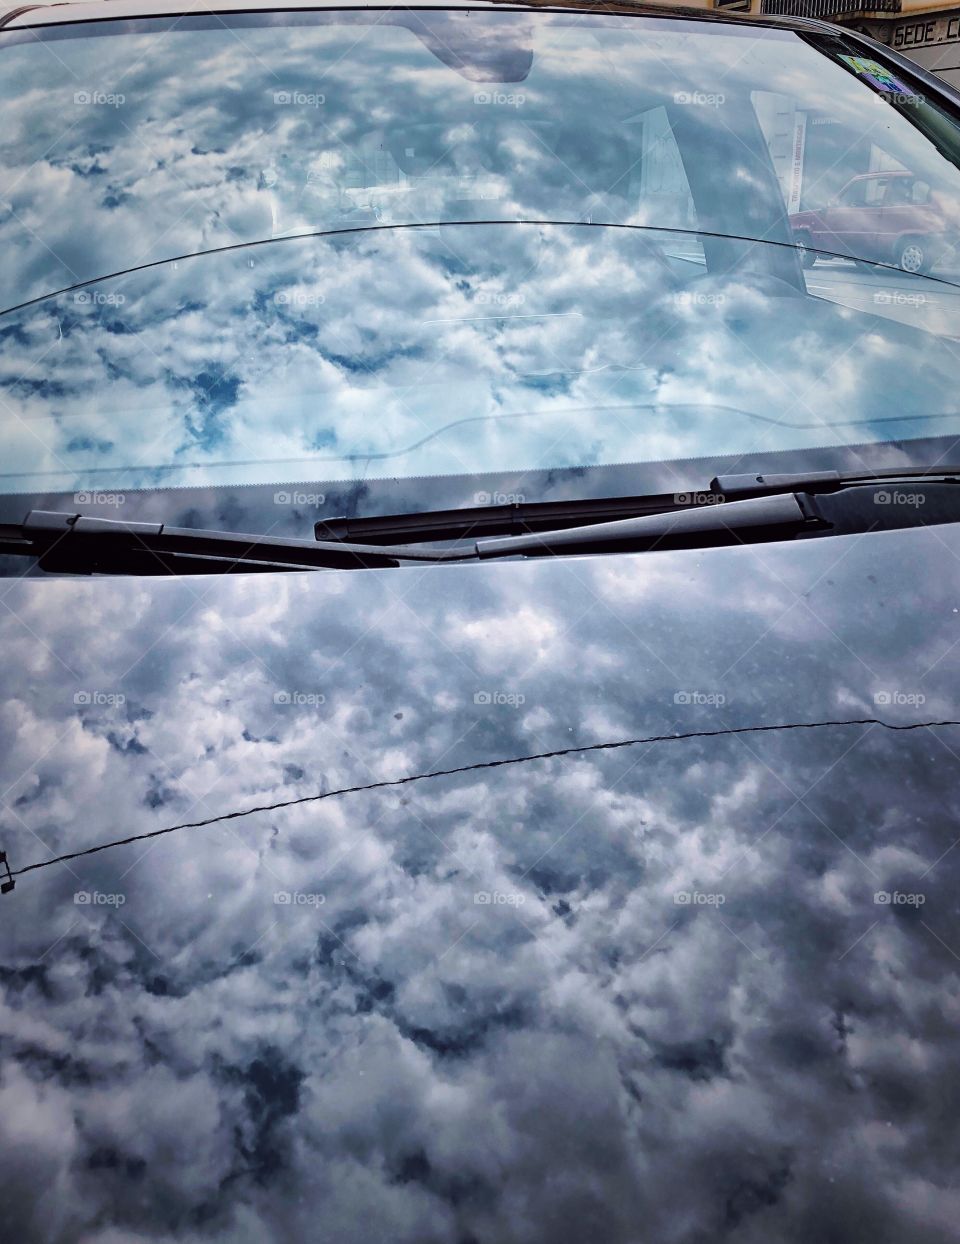 clouds in the car